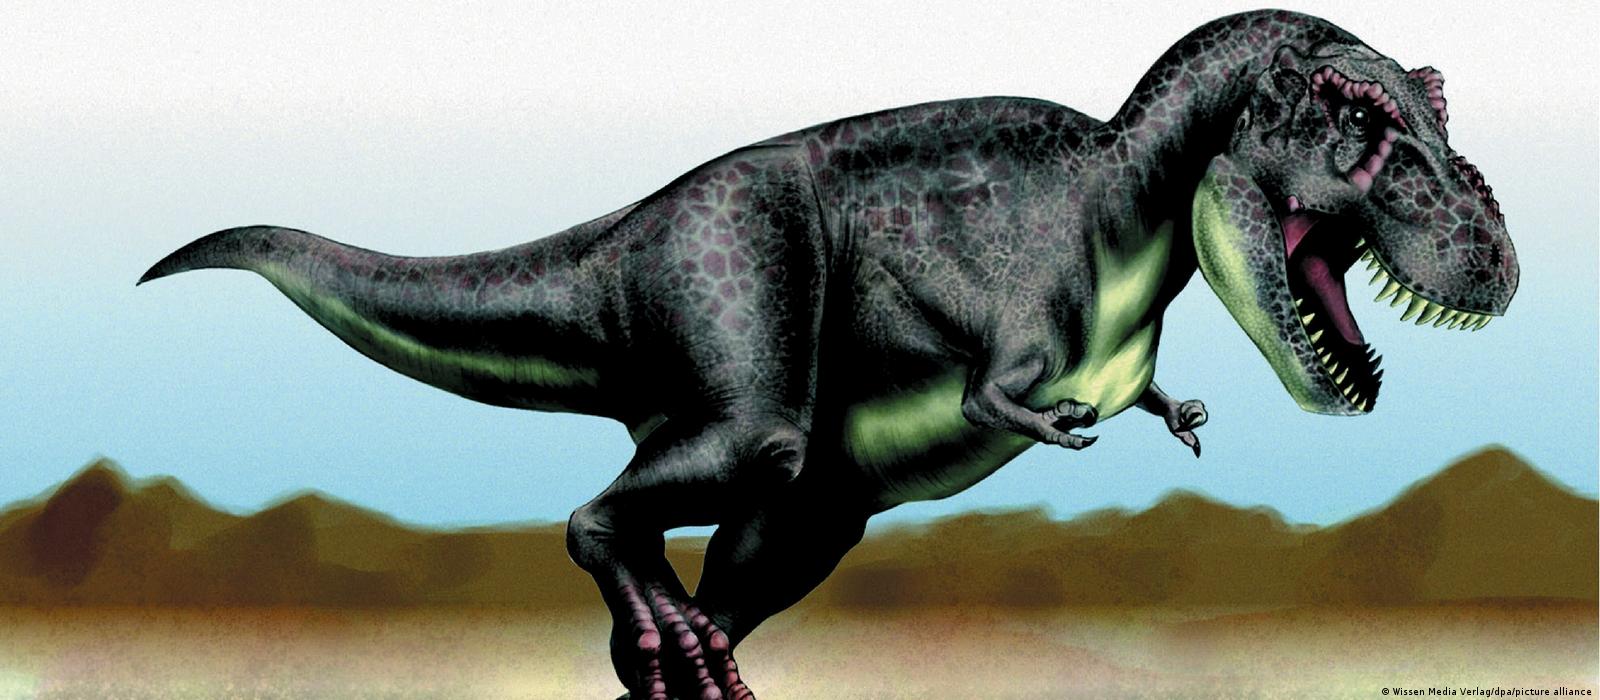 Middag eten Wonderbaarlijk opblijven Billions of T. rex existed on Earth – DW – 04/16/2021